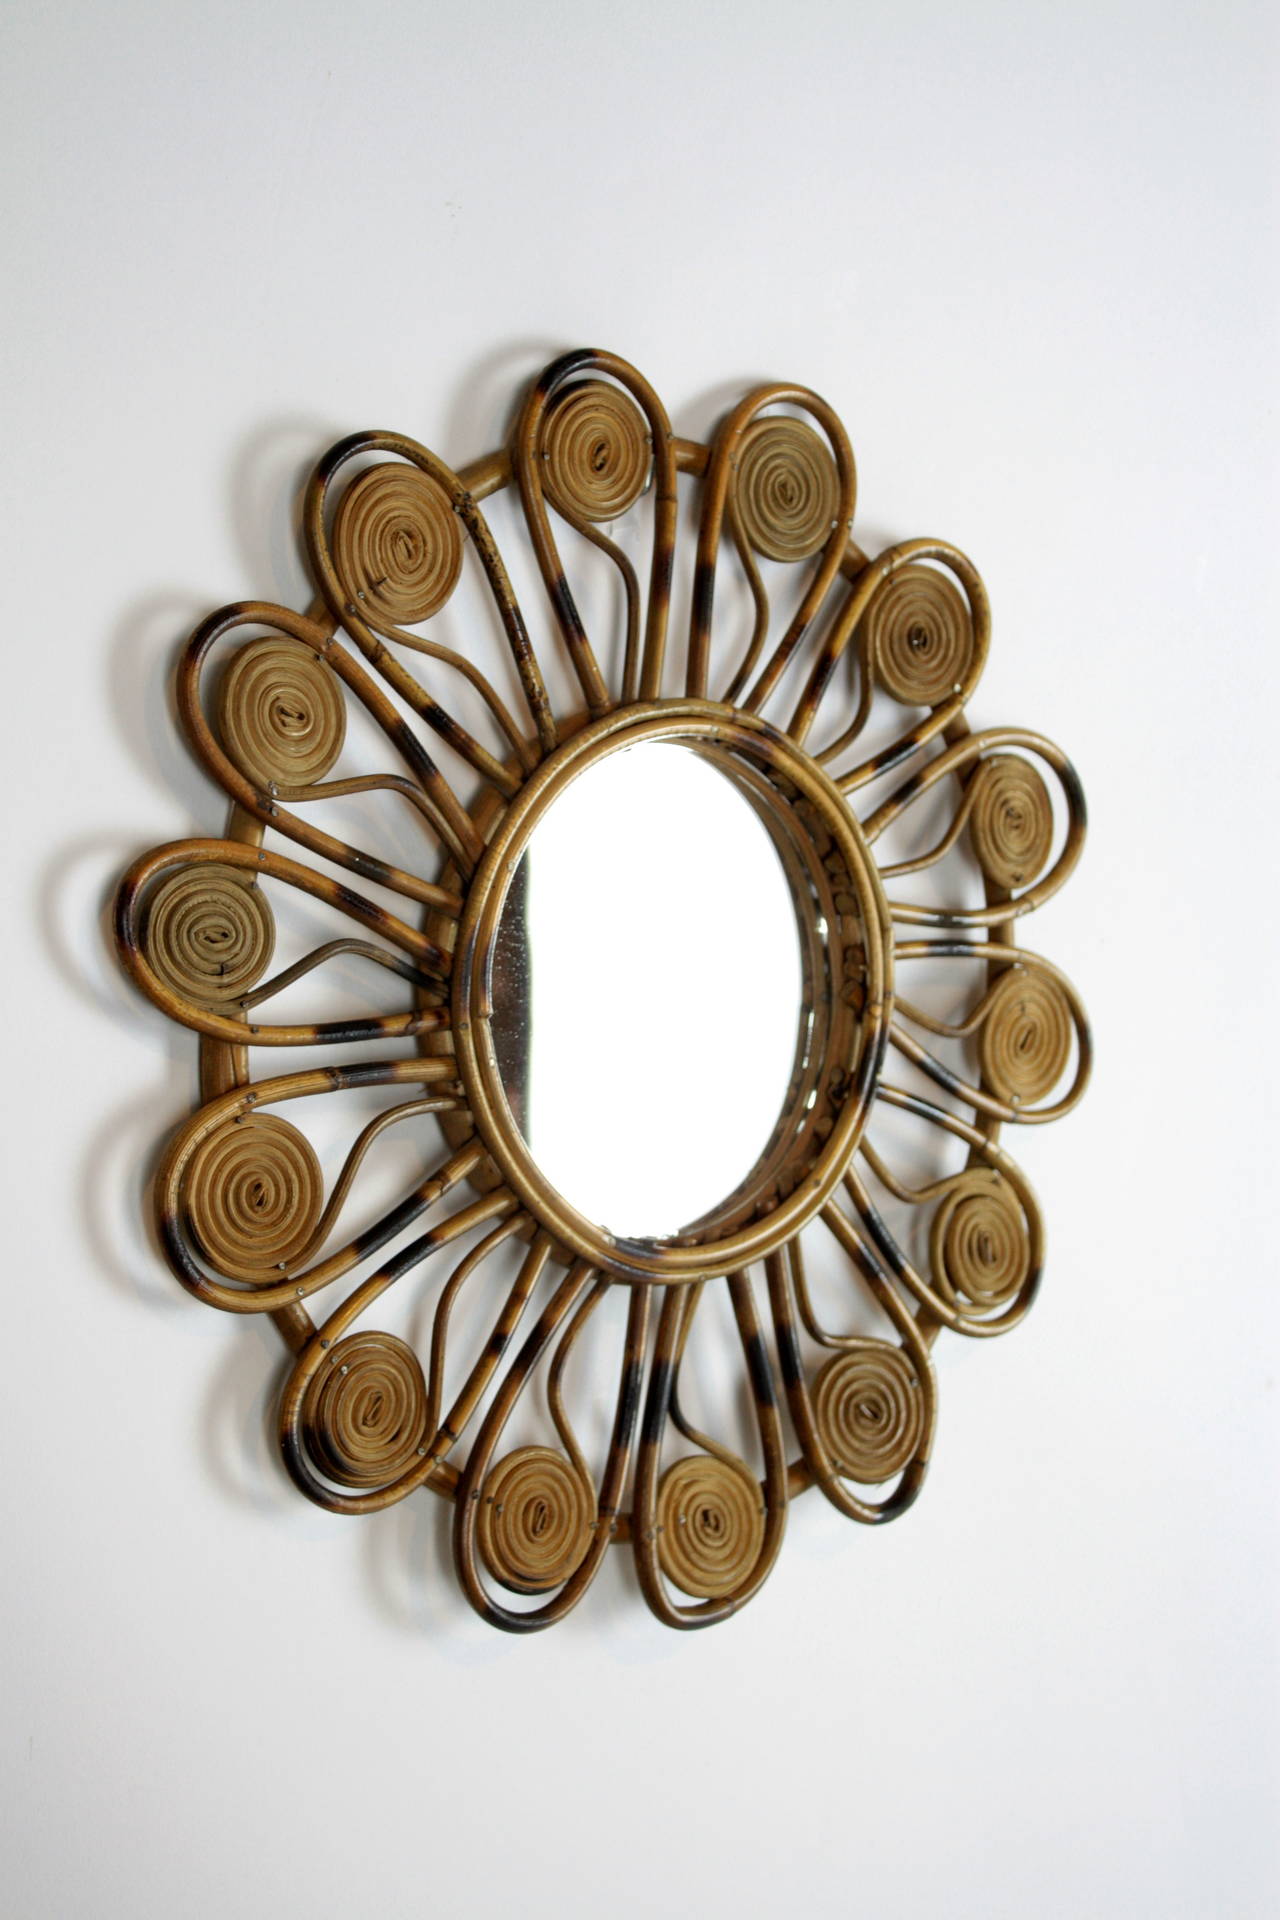 Rare mini flower burst mirror in wicker, Mediterranean coast French style.